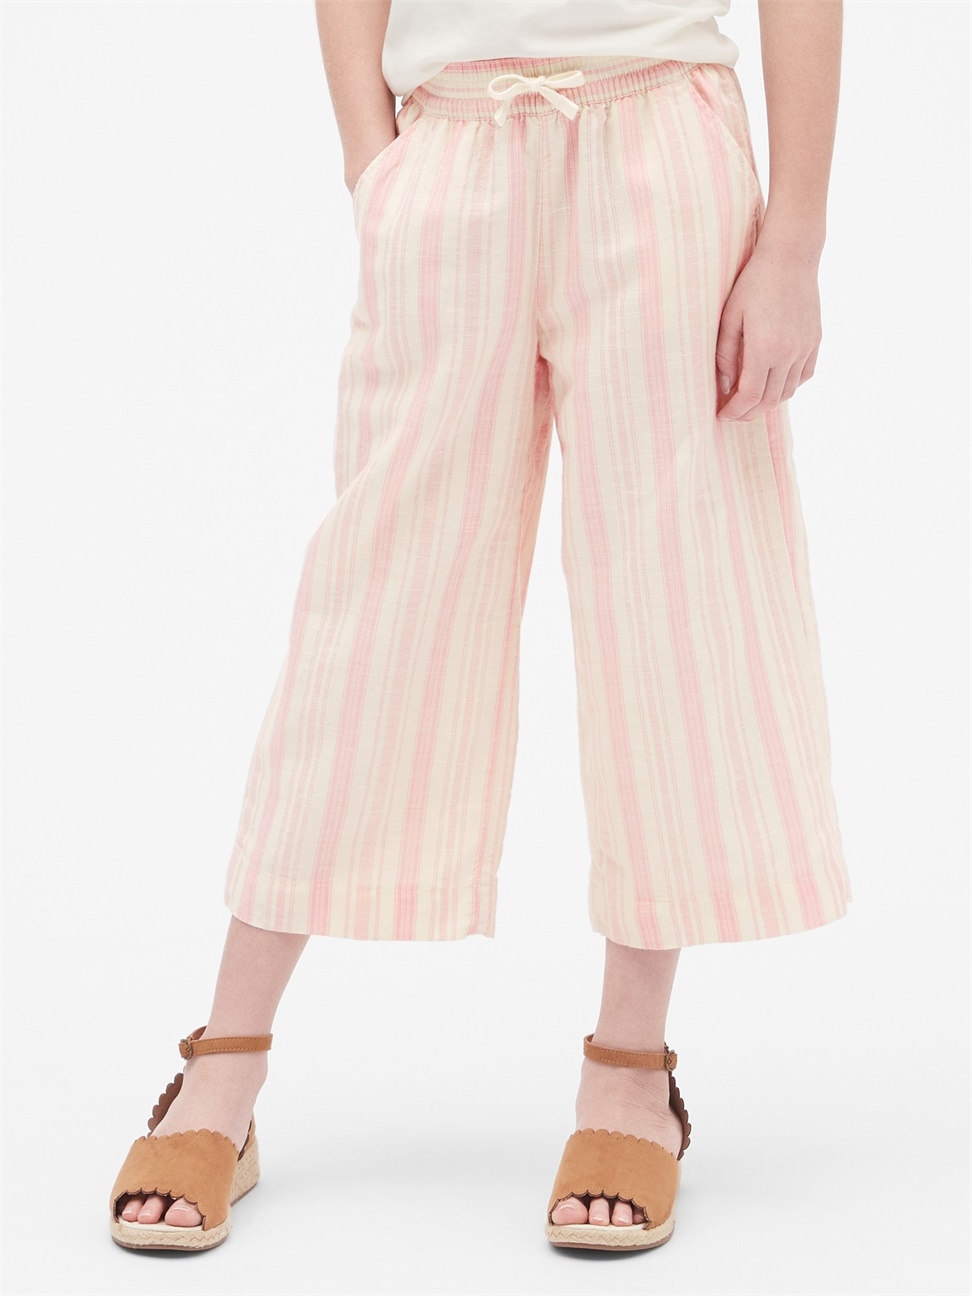 女童裝|舒適棉麻混紡條紋寬管褲-粉色條紋